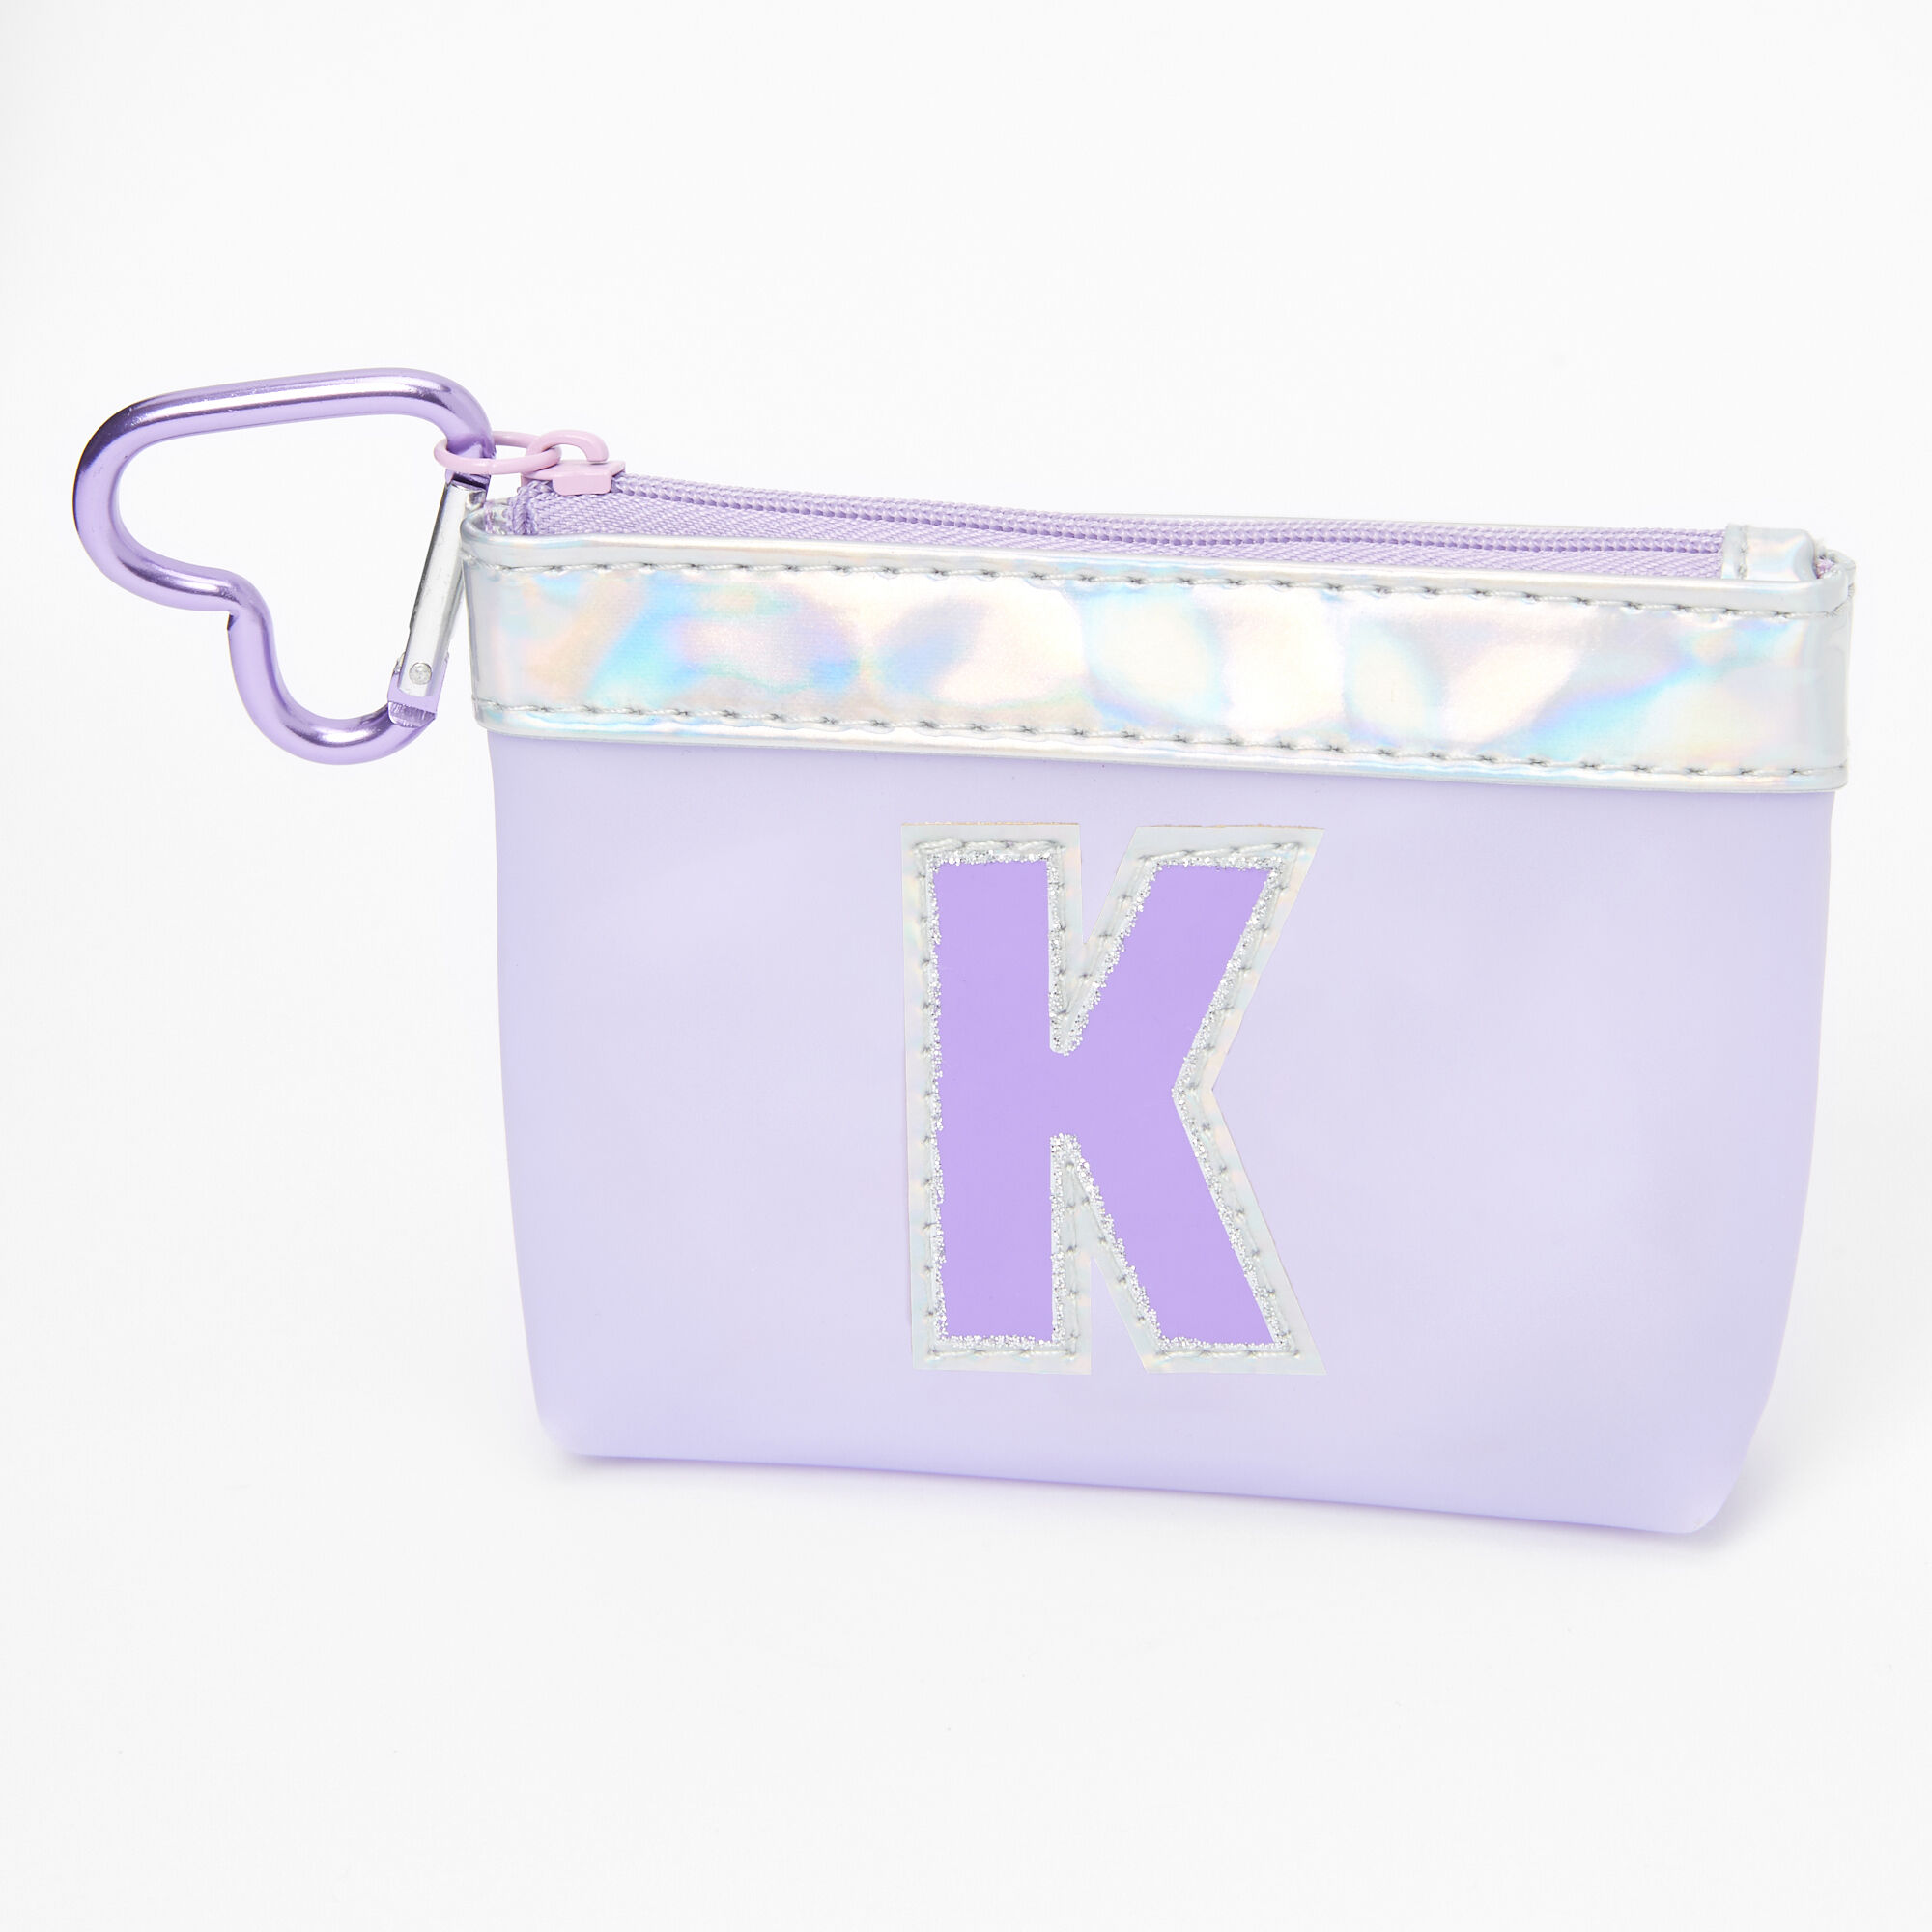 Coin Purse Key Chain - Purple Metallic Splash – Kim White Bags/Belts